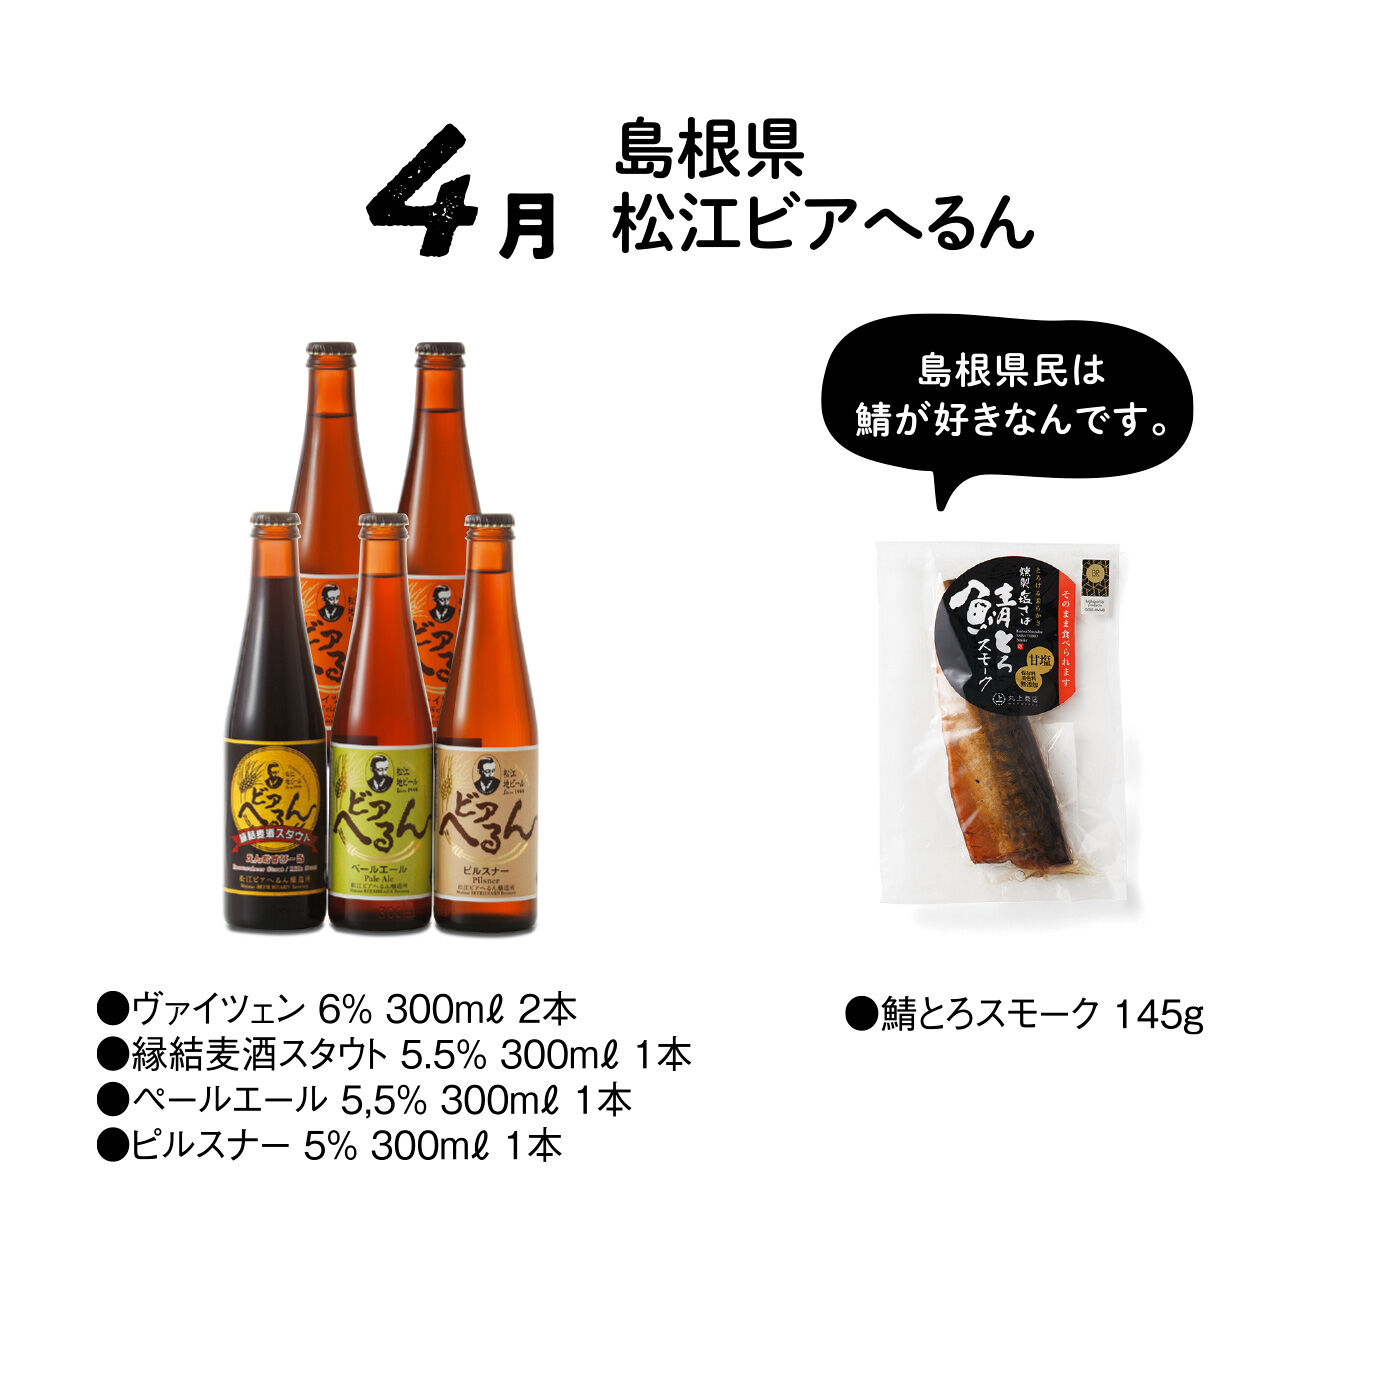 FP産地直送マルシェ|【締切 7/7】クラフトビールと相性抜群のご当地おつまみセット12ヵ月コース|「地元に愛され、地元の方にうまいと言われるビール」「日本人に愛され、日本人にうまいと言われるビール」を目指して醸造されています。おつまみにはとろける食感の鯖の燻製を。